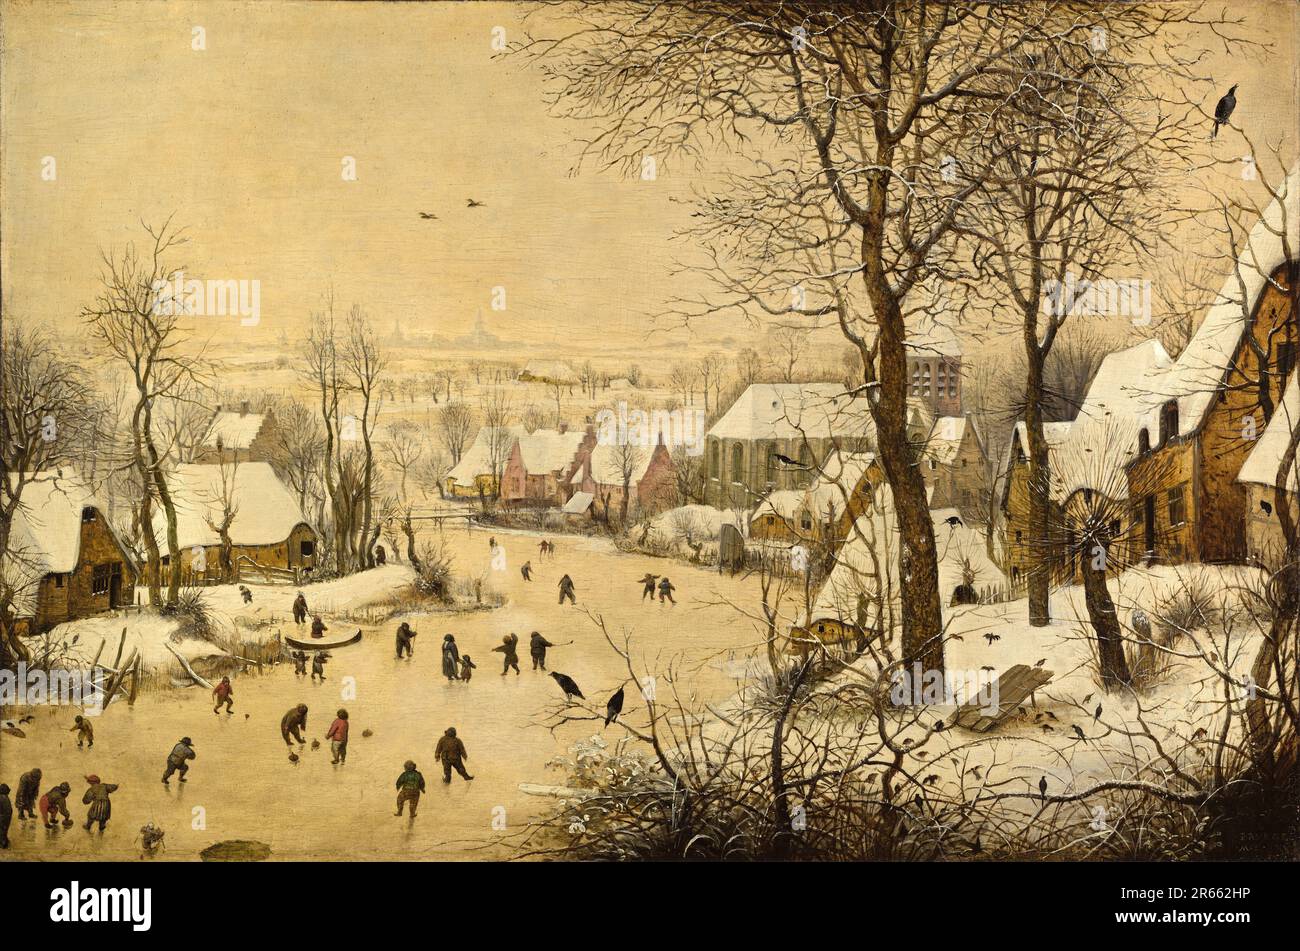 Winterlandschaft mit Skatern und einer Vogelfalle, gemalt vom niederländischen Renaissance-Maler Pieter Breughel der Ältere im Jahr 1565. Breughel war der wichtigste Maler der niederländischen und flämischen Renaissance. Seine Themenauswahl war einflussreich, er lehnte Porträts und religiöse Szenen zugunsten von lokalen und Bauernszenen ab. Stockfoto